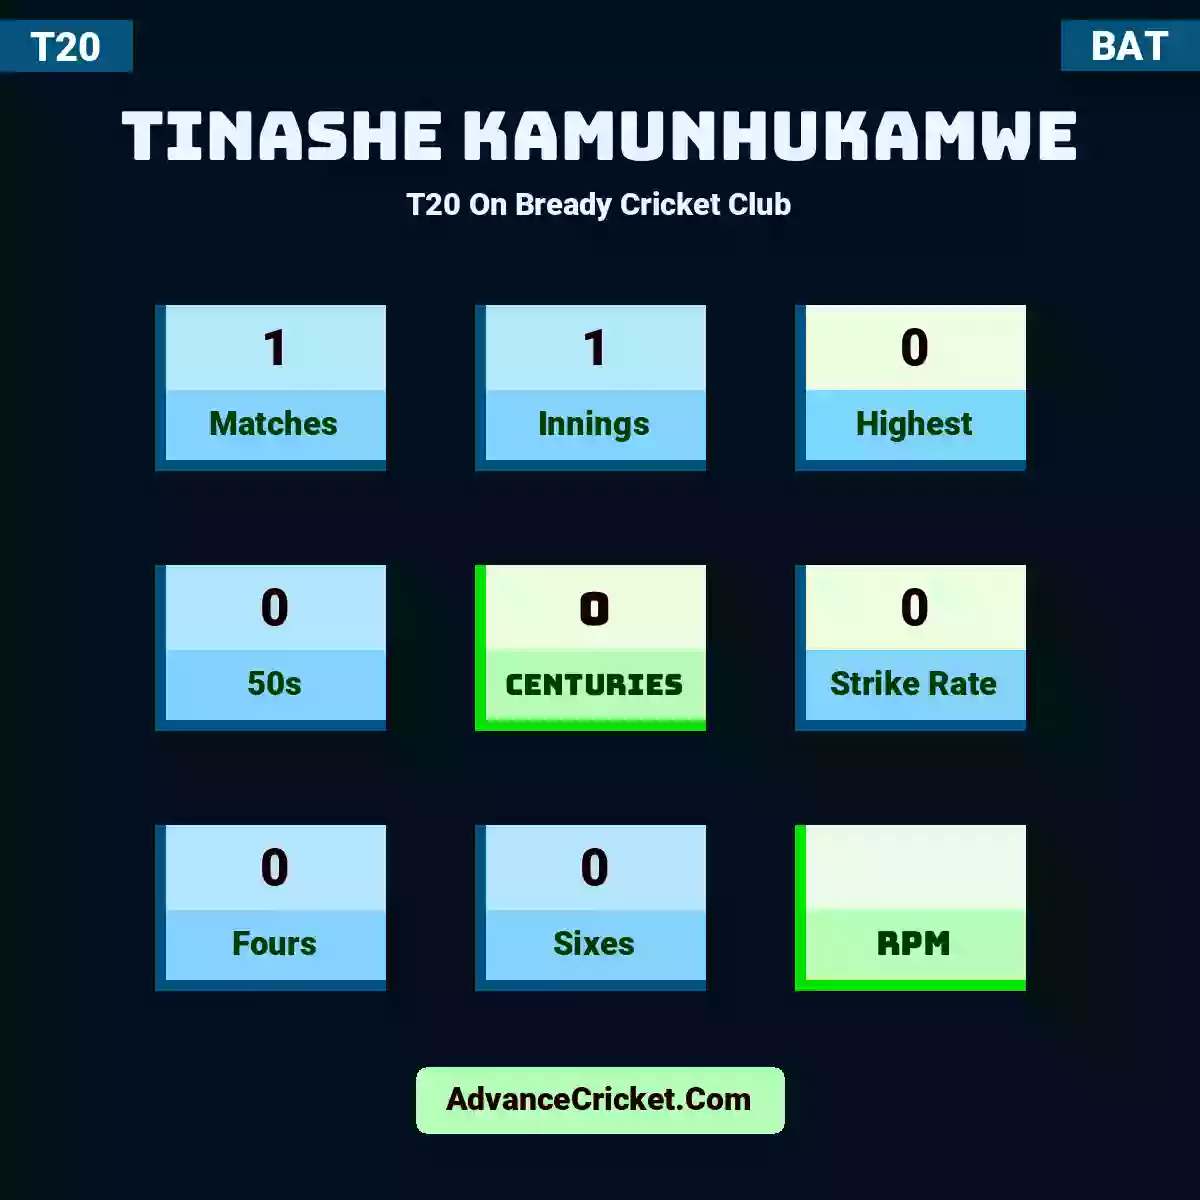 Tinashe Kamunhukamwe T20  On Bready Cricket Club, Tinashe Kamunhukamwe played 1 matches, scored 0 runs as highest, 0 half-centuries, and 0 centuries, with a strike rate of 0. T.Kamunhukamwe hit 0 fours and 0 sixes.